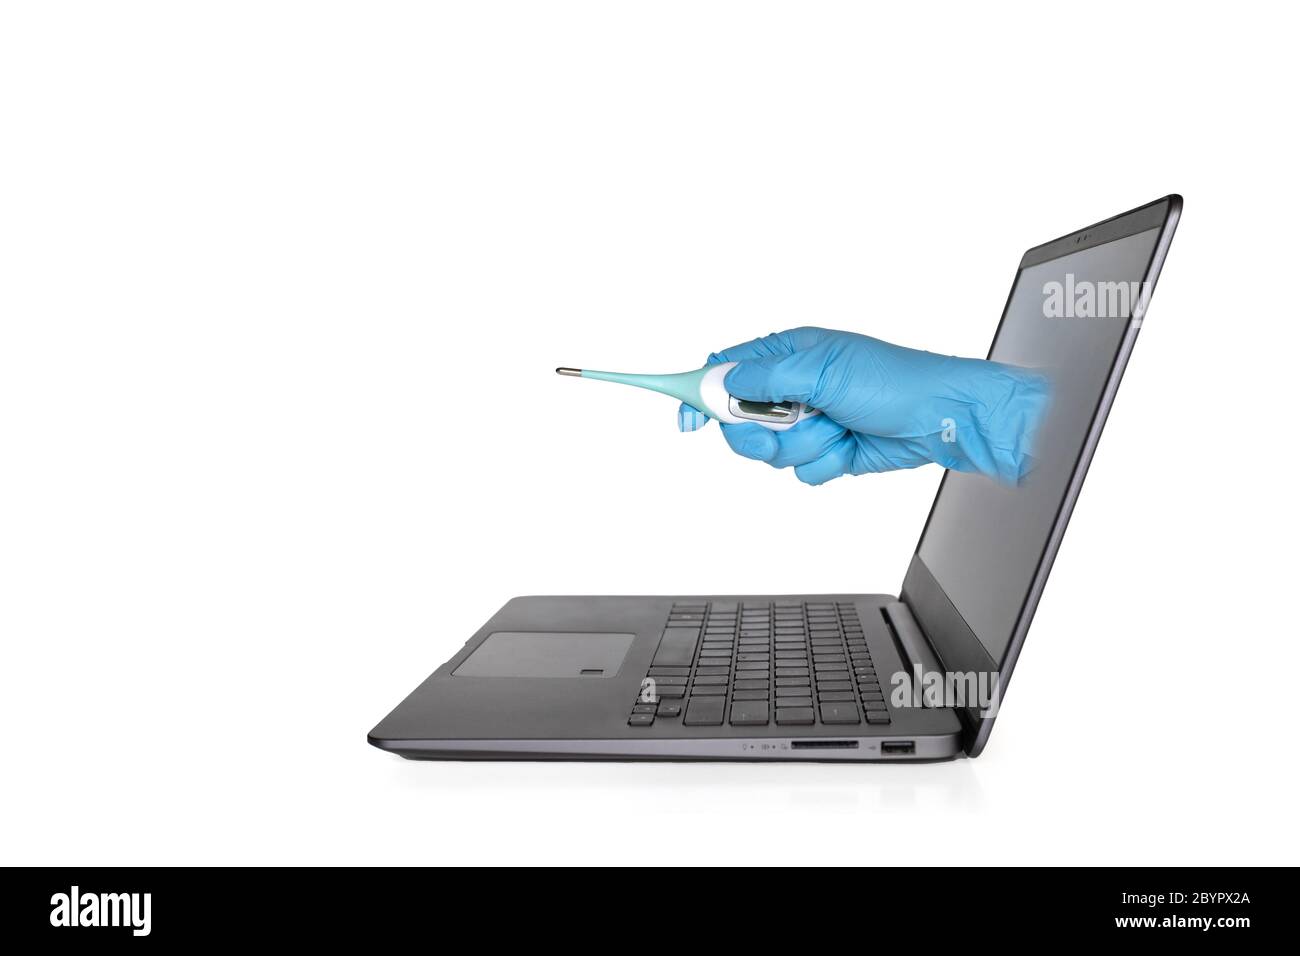 Krankenschwester oder Arzt Hand mit Handschuh Halten Sie ein Thermometer aus Laptop-Bildschirm zu symbolisieren virtuelle Gesundheit erreichen Stockfoto